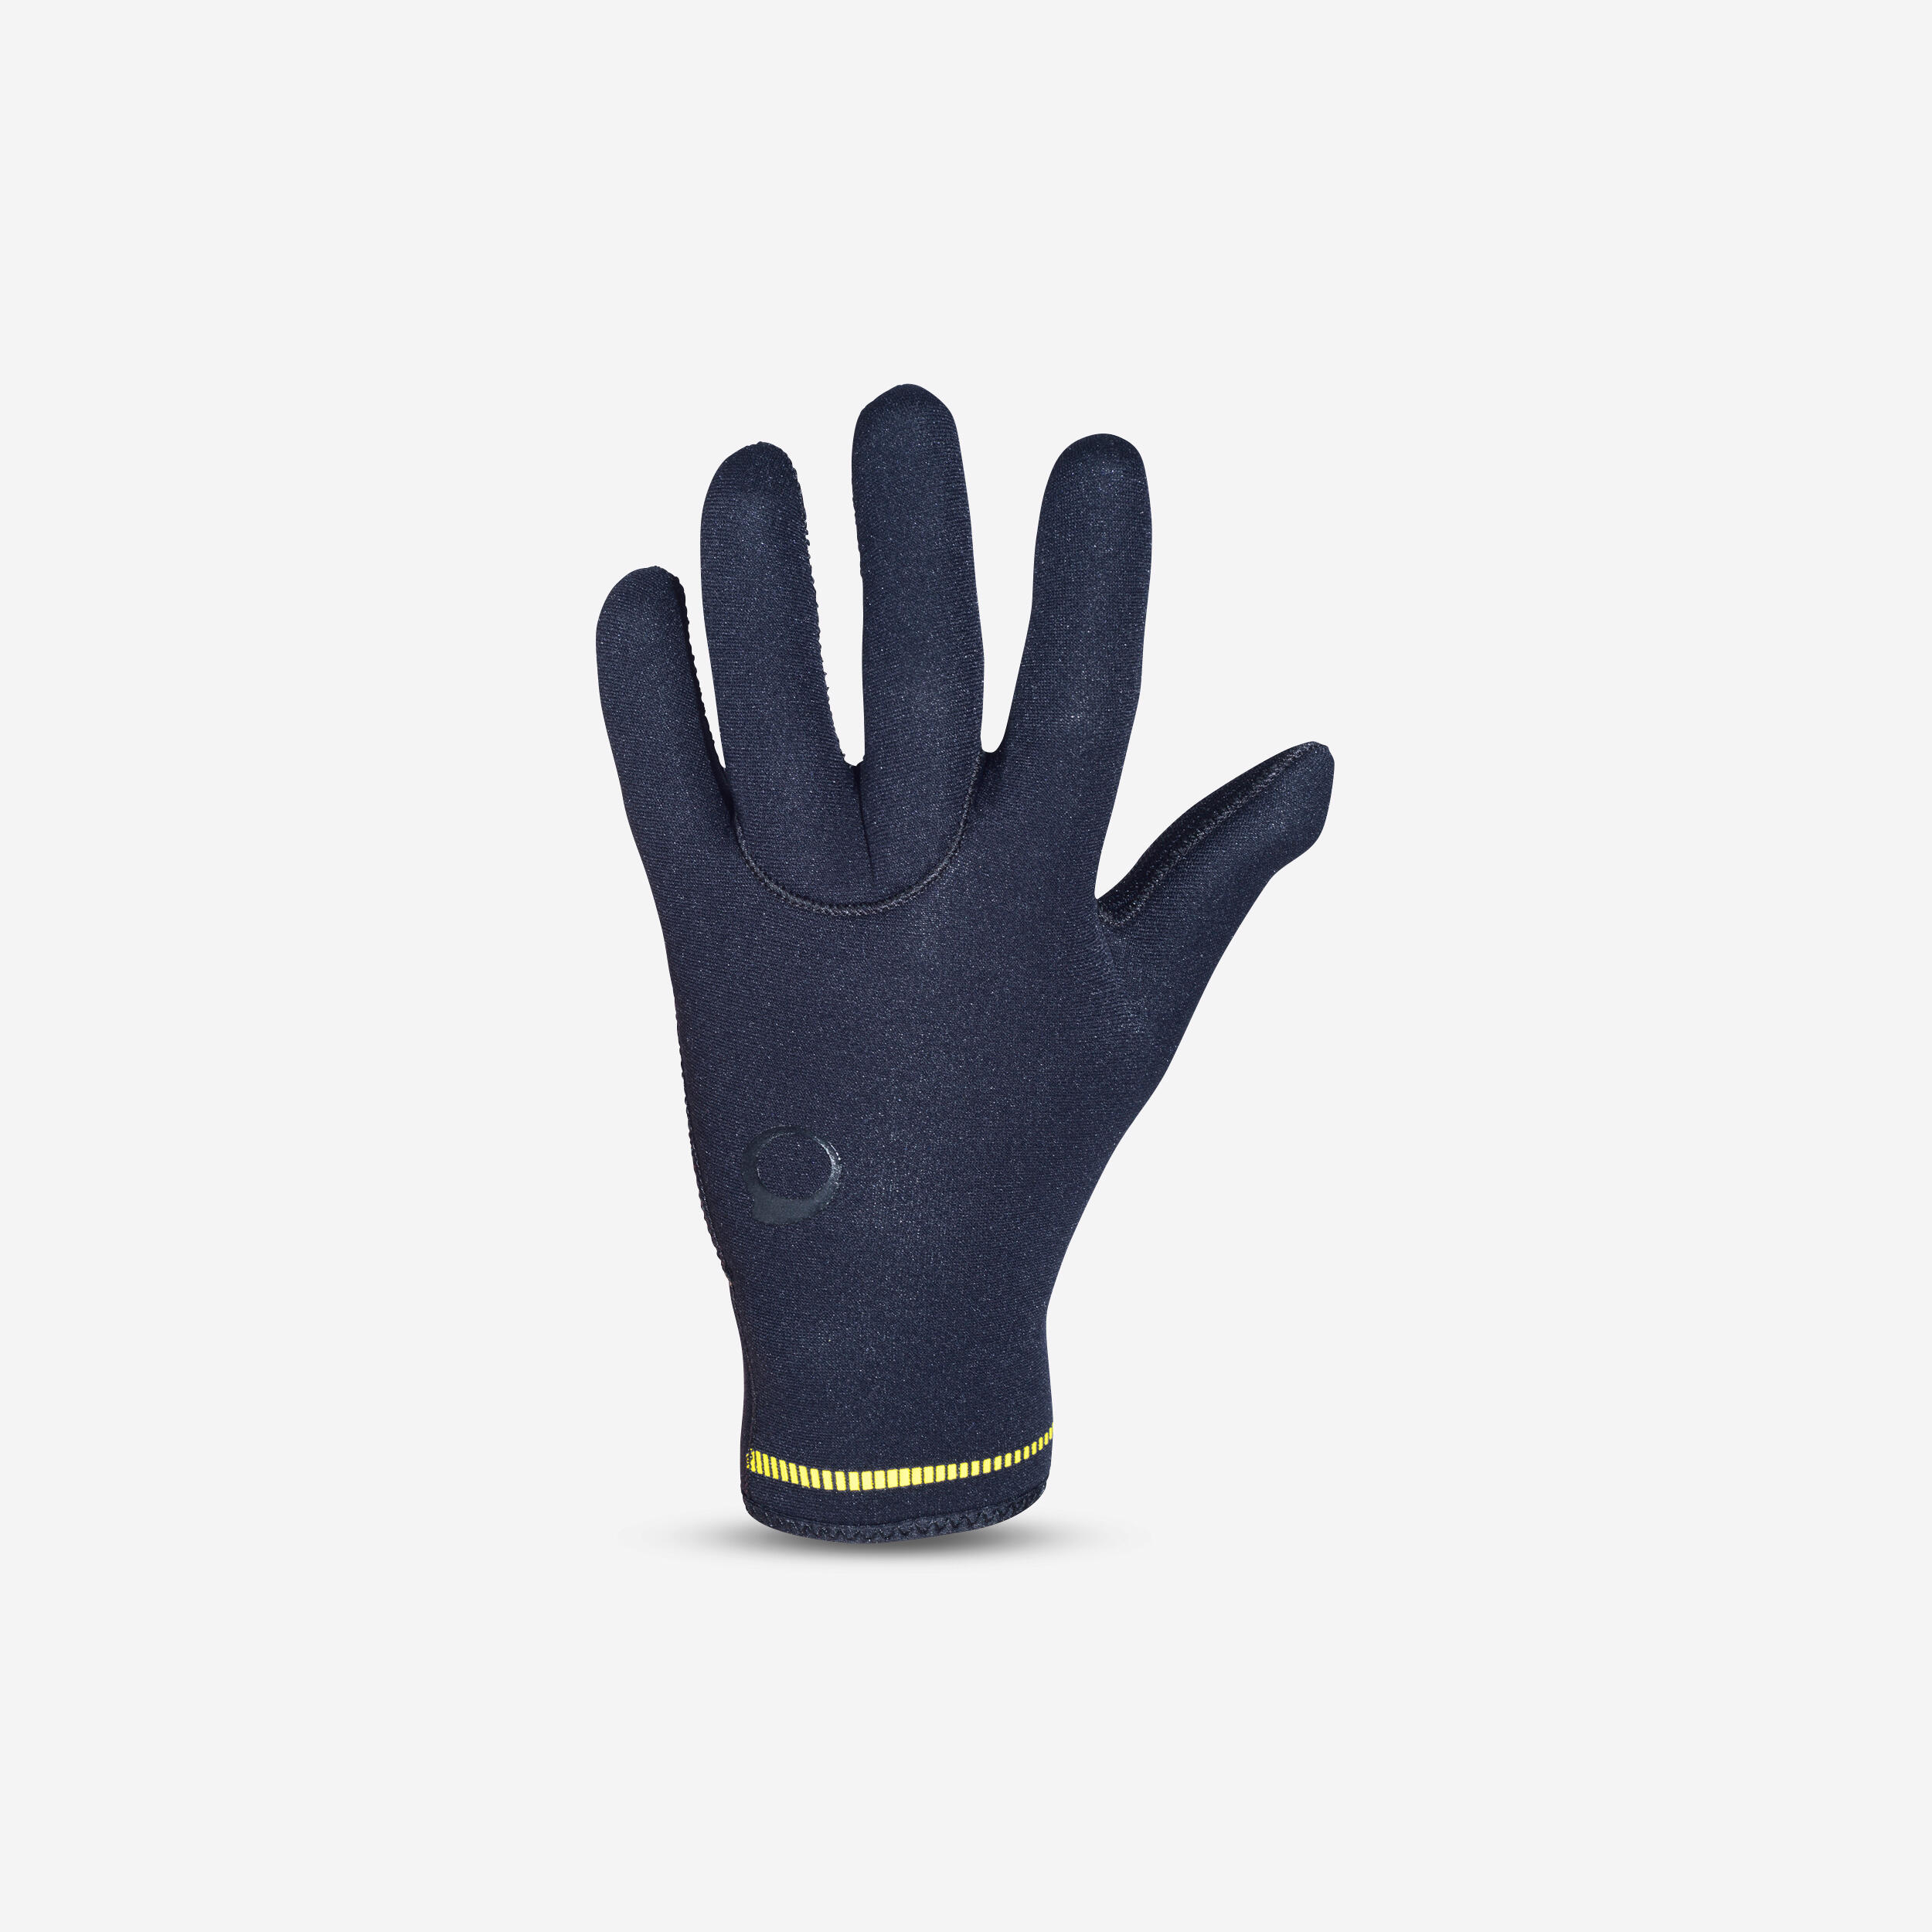 Diving gloves 3 mm neoprene black 1/9